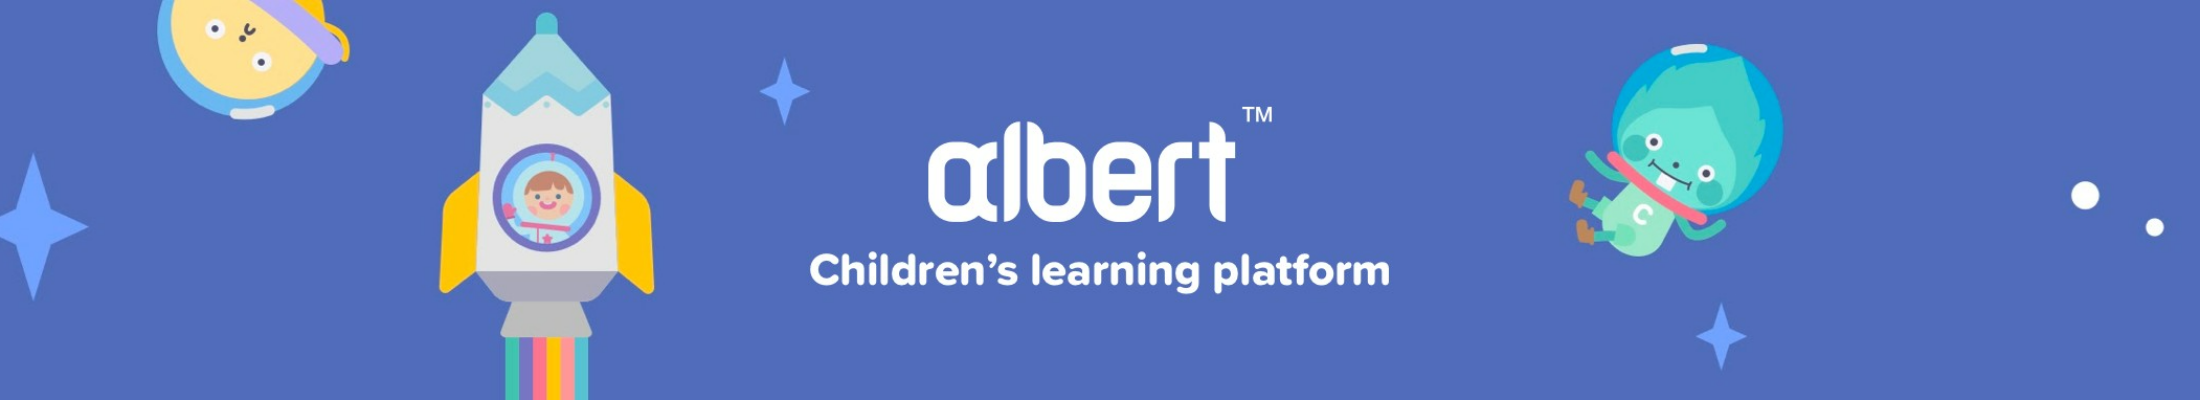 eEducation Albert